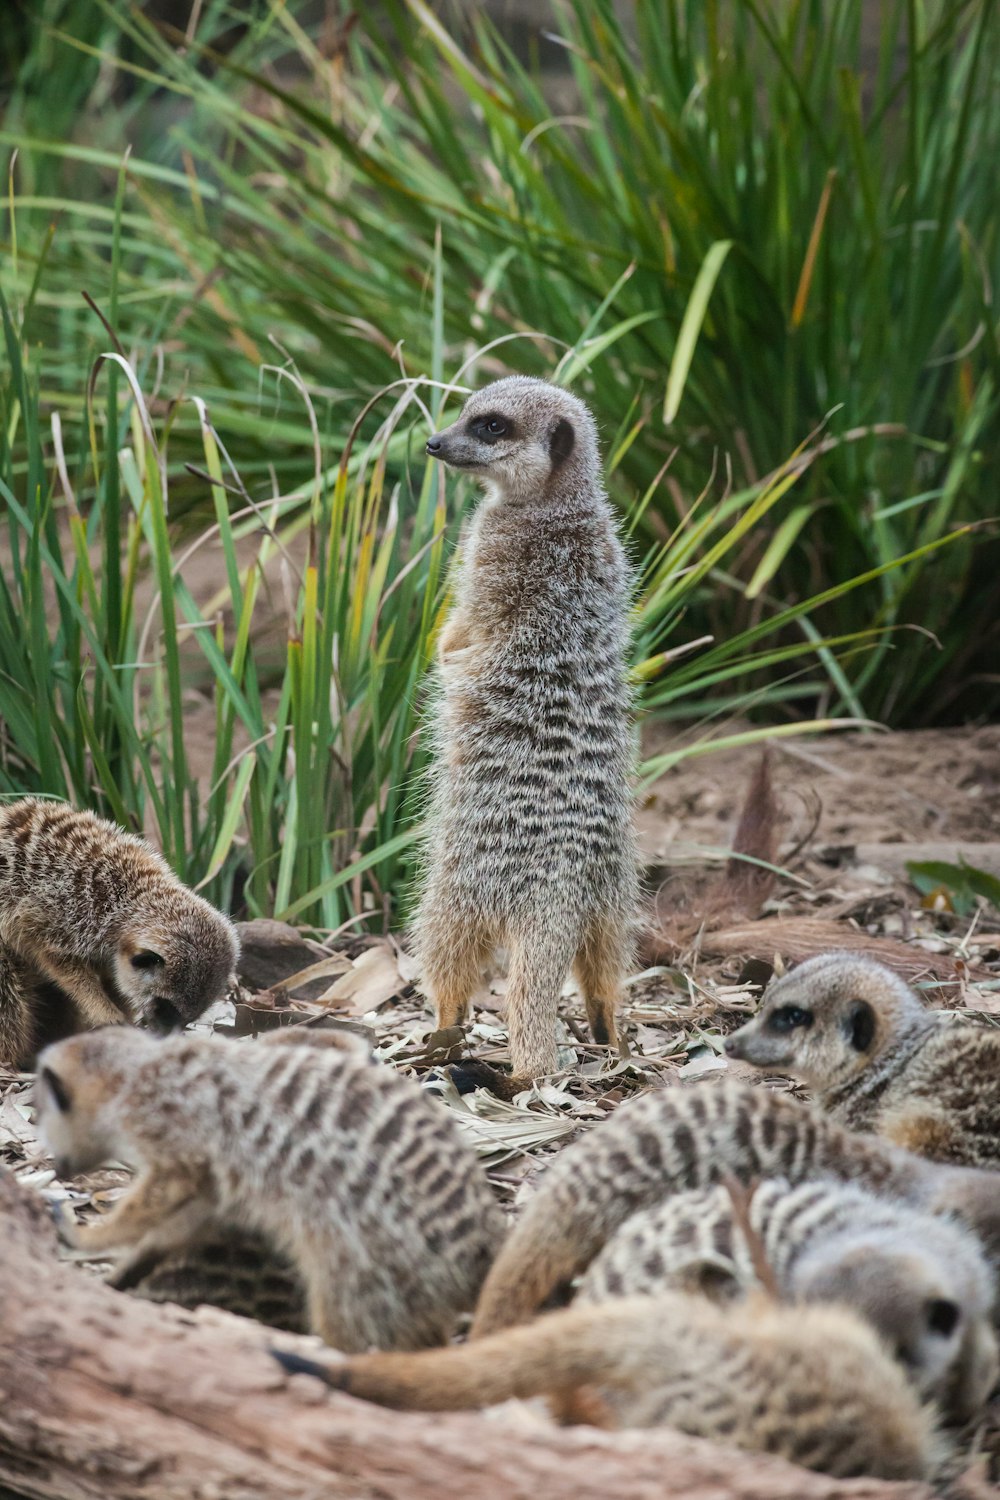 group of meerkat